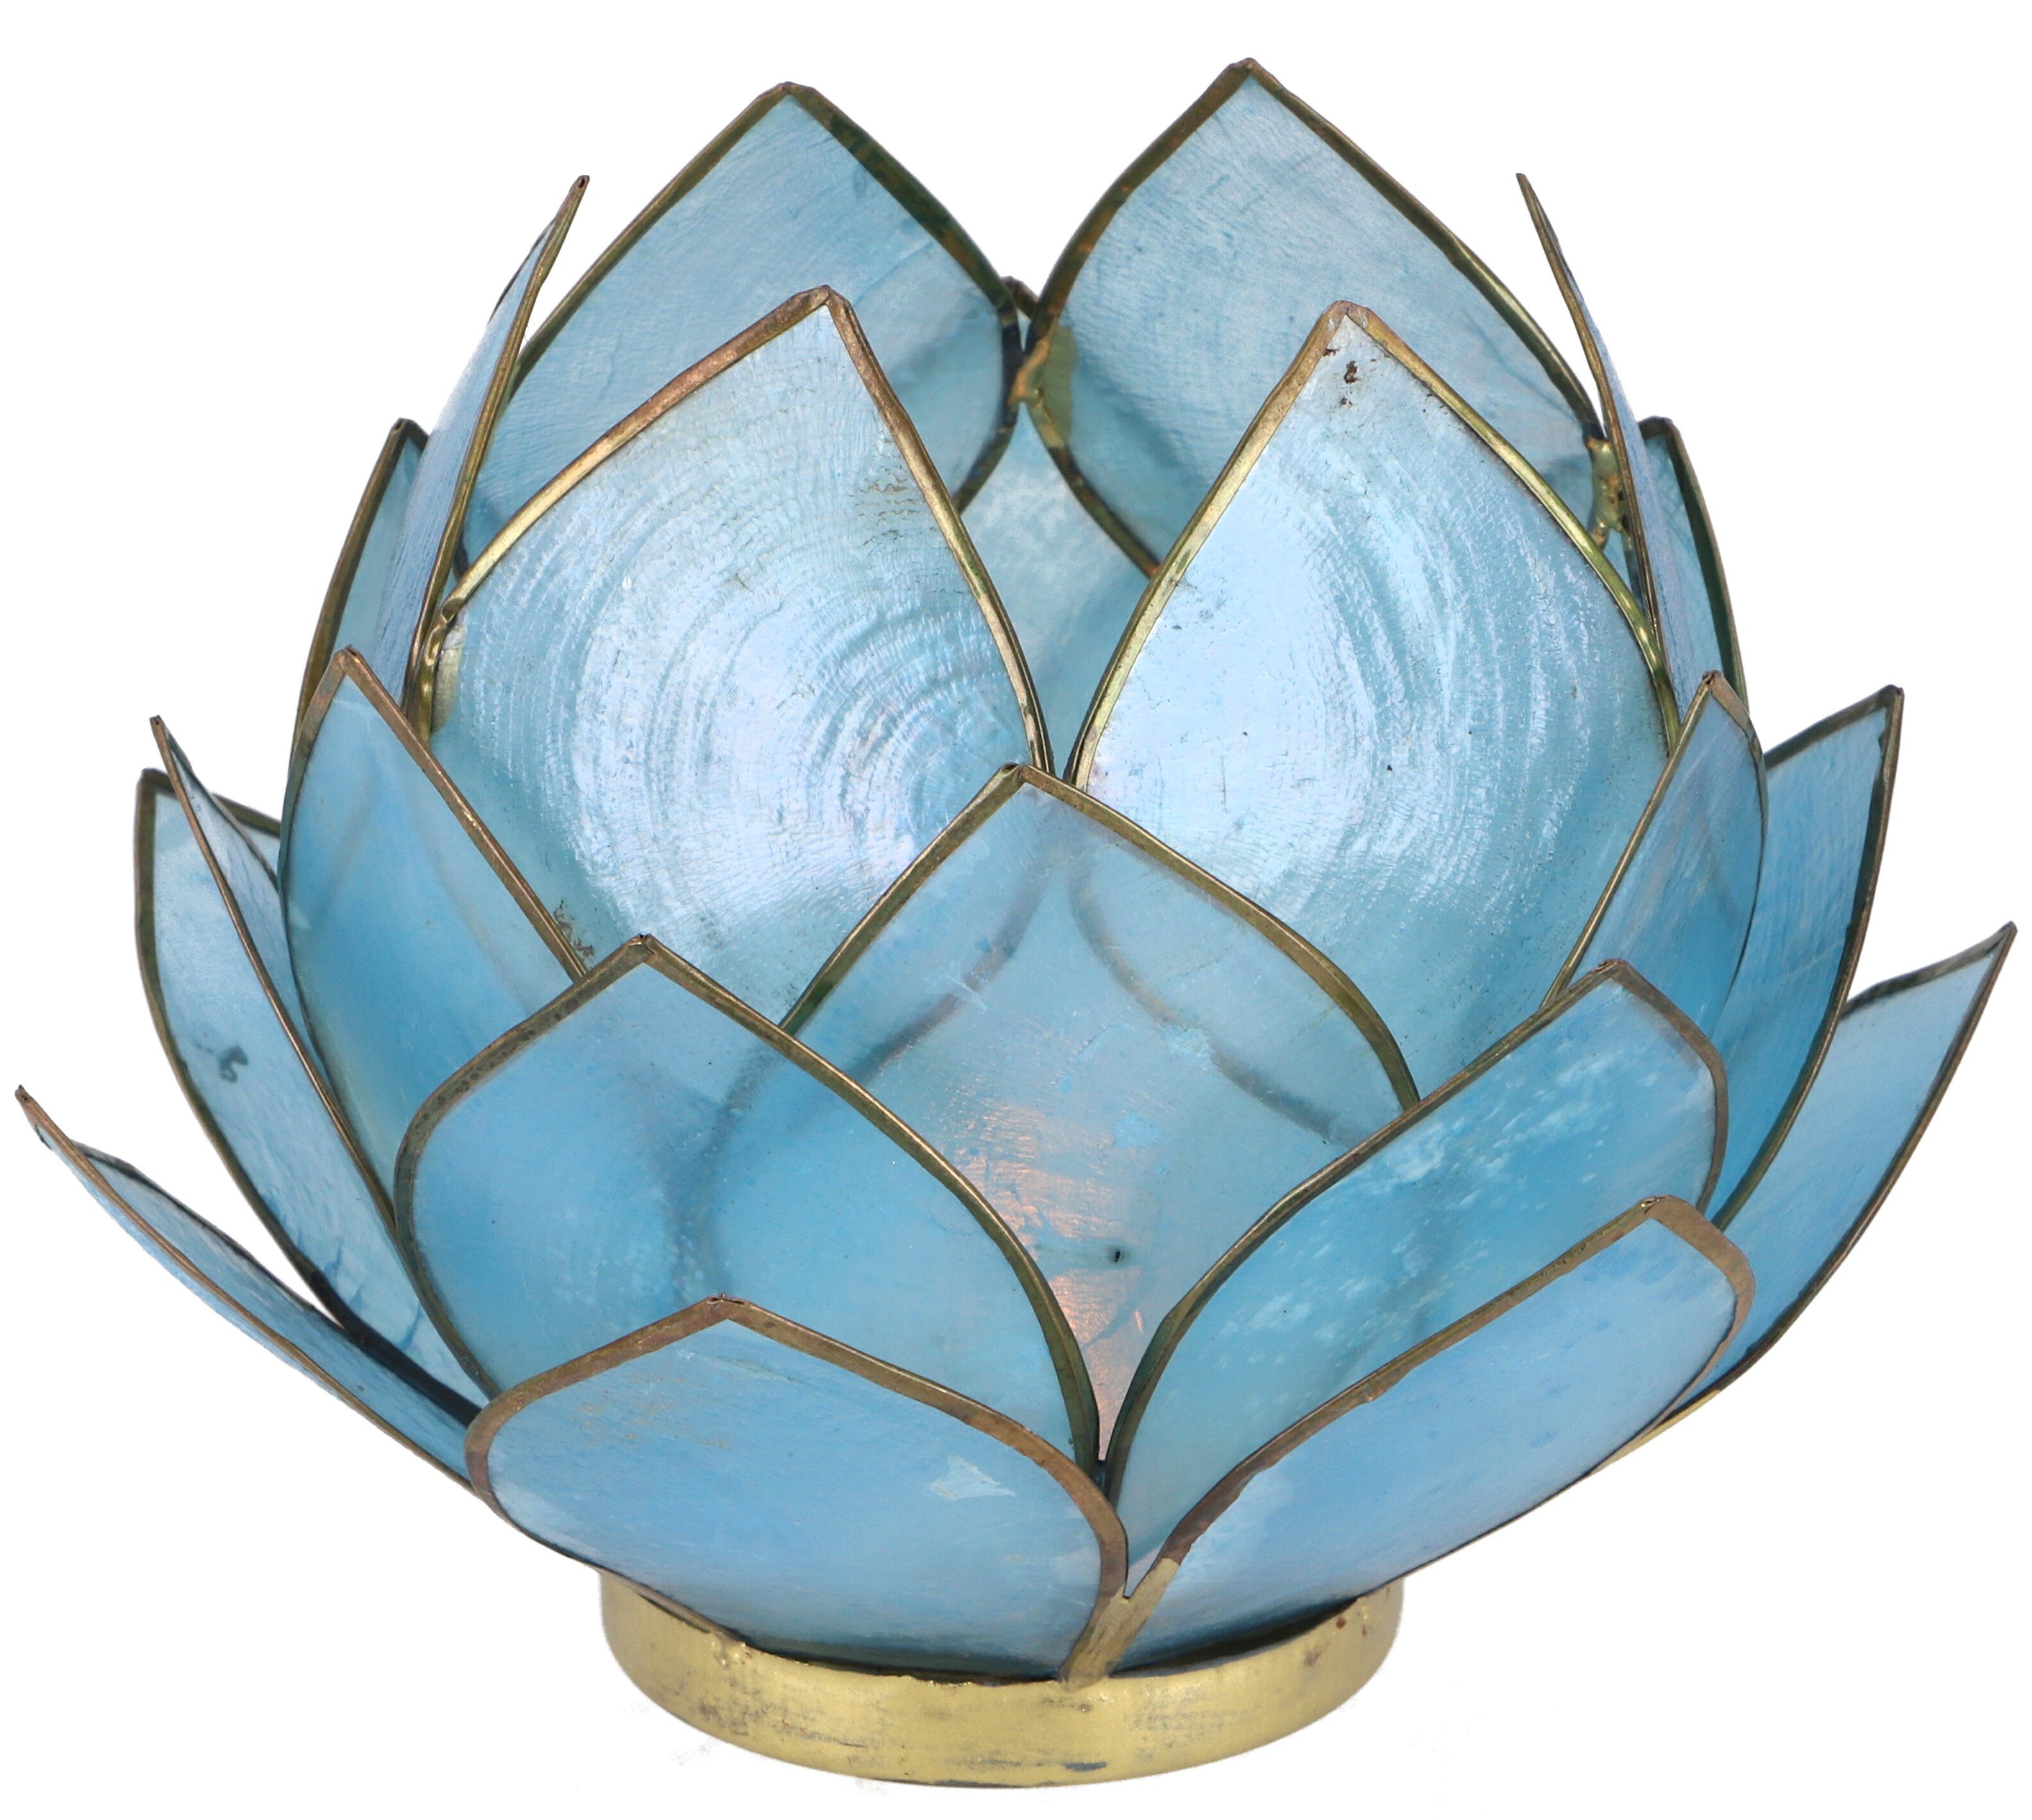 Lotus 14*10 himmelblau - Teelicht Windlicht Guru-Shop Muschel cm